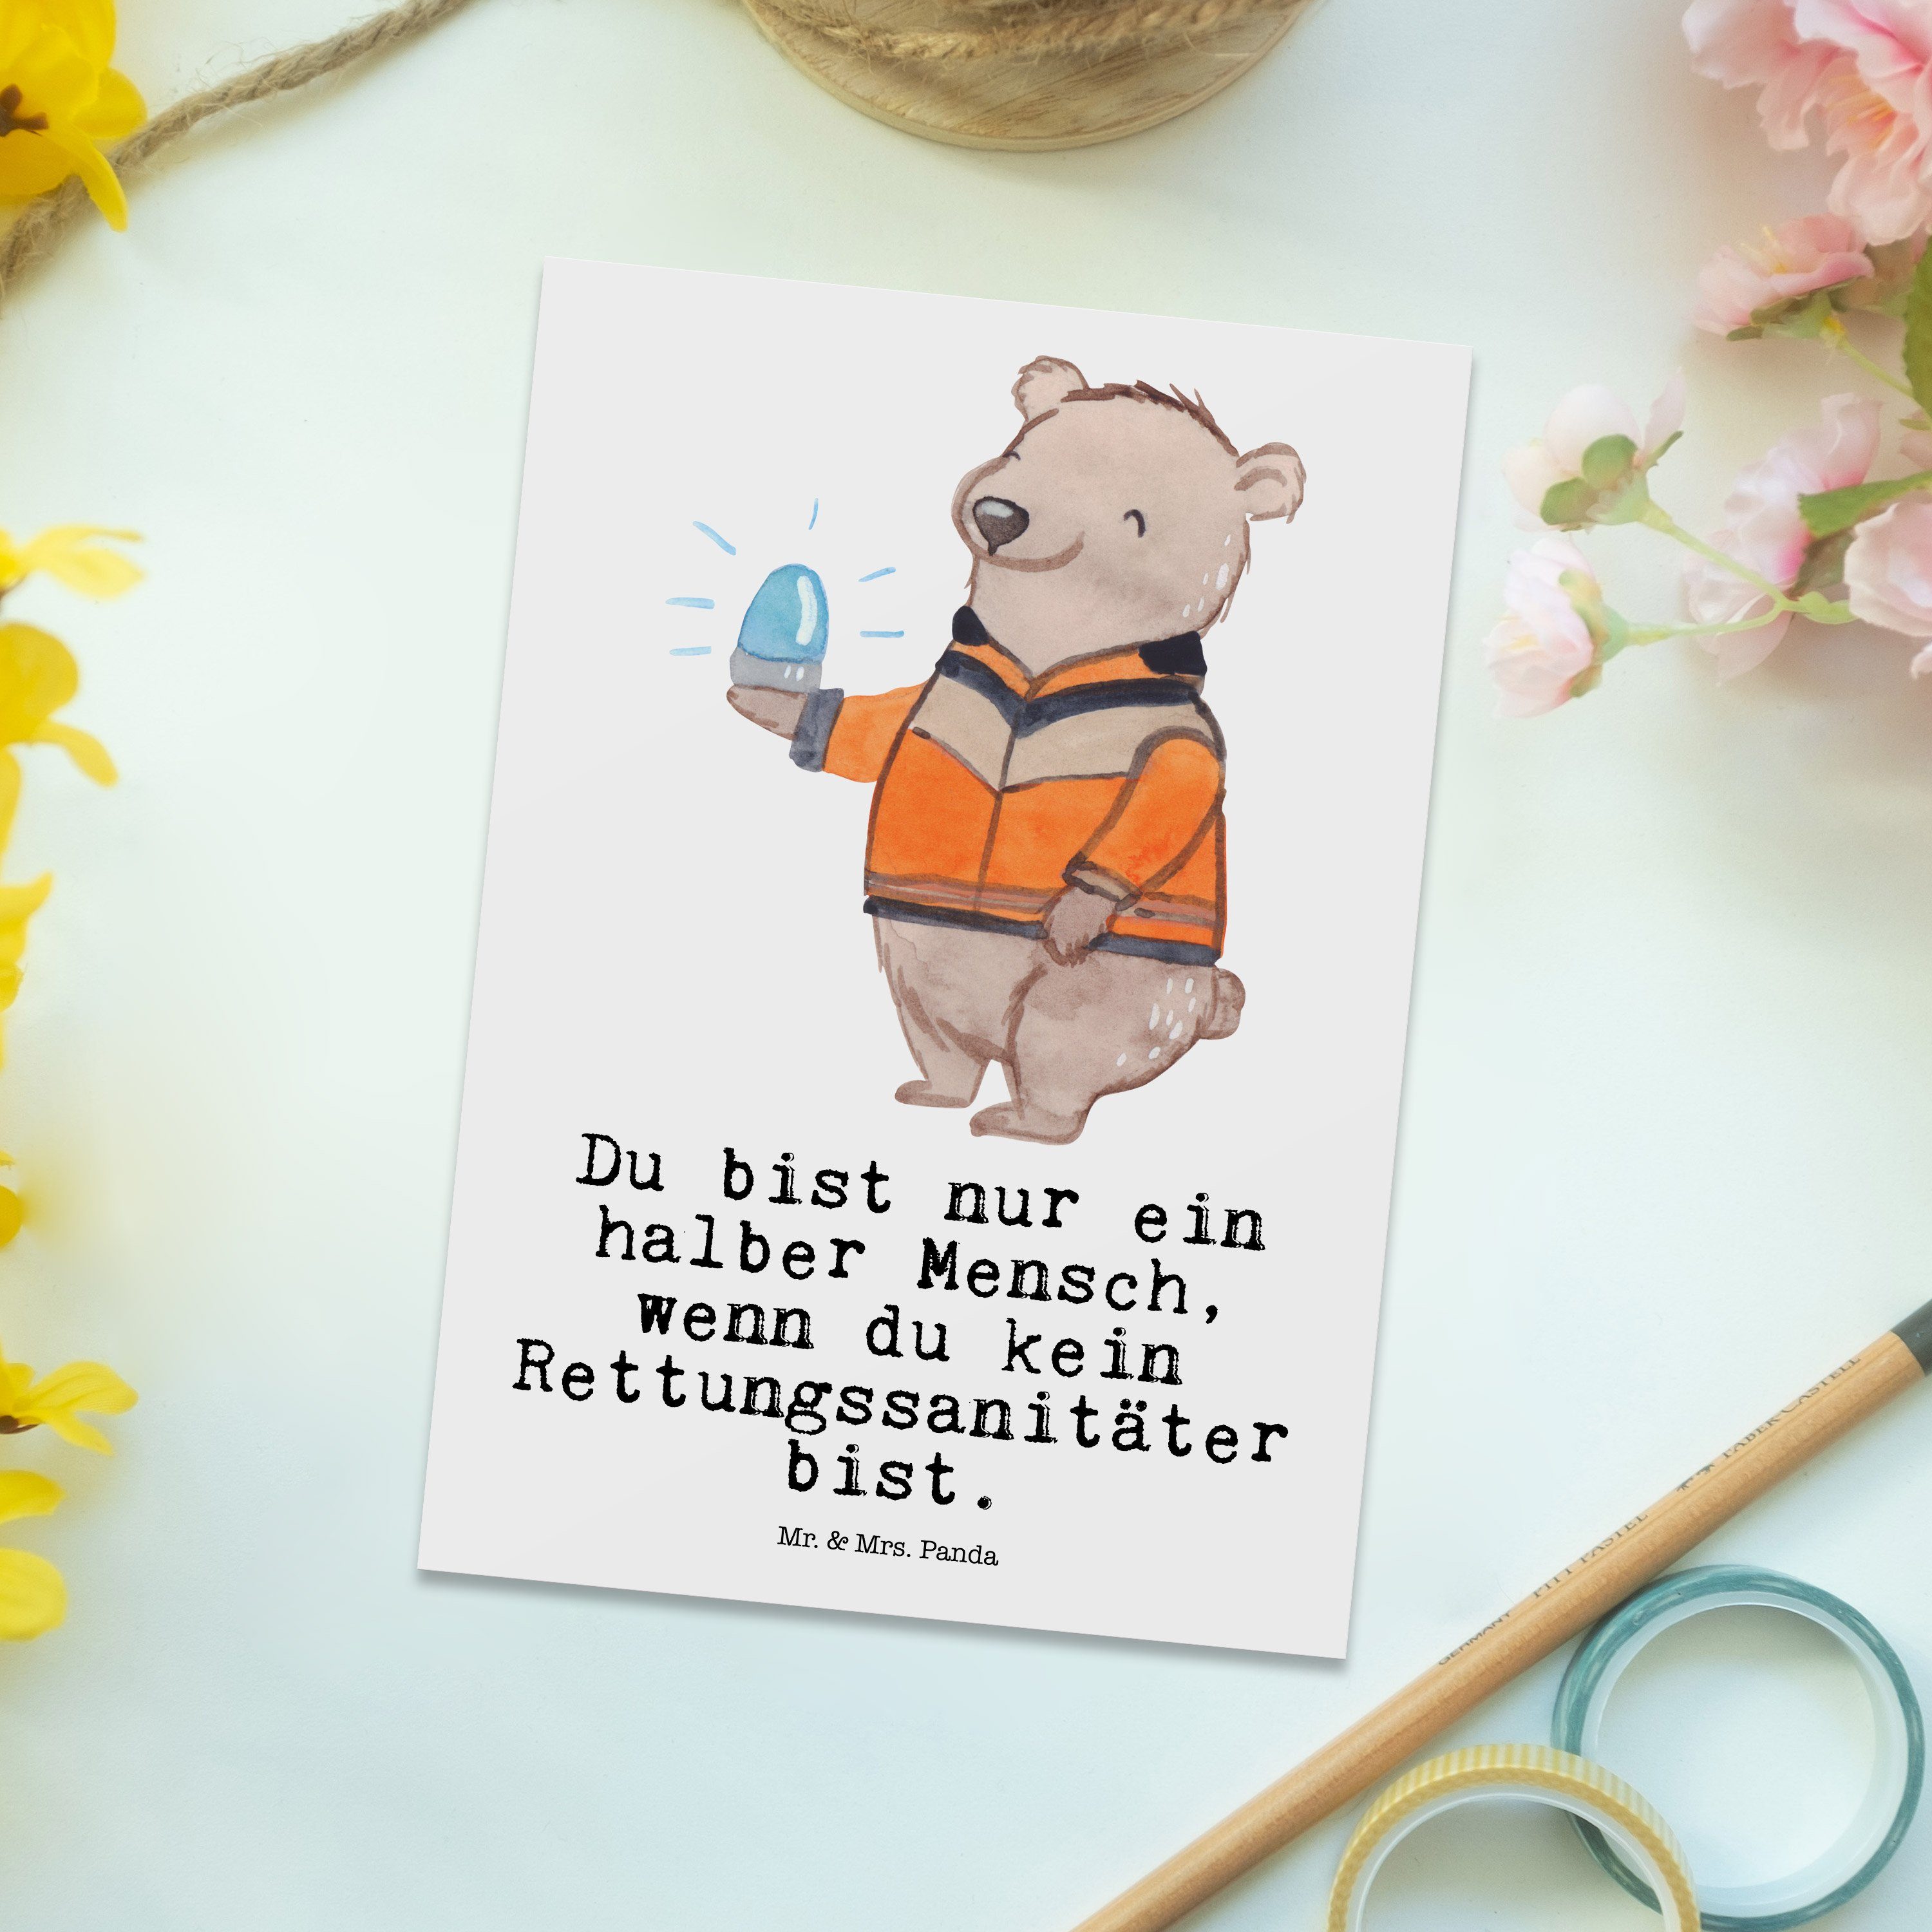 Mr. & - Dankeschön, Panda - Abschied, Postkarte E Herz Weiß mit Geschenk, Rettungssanitäter Mrs